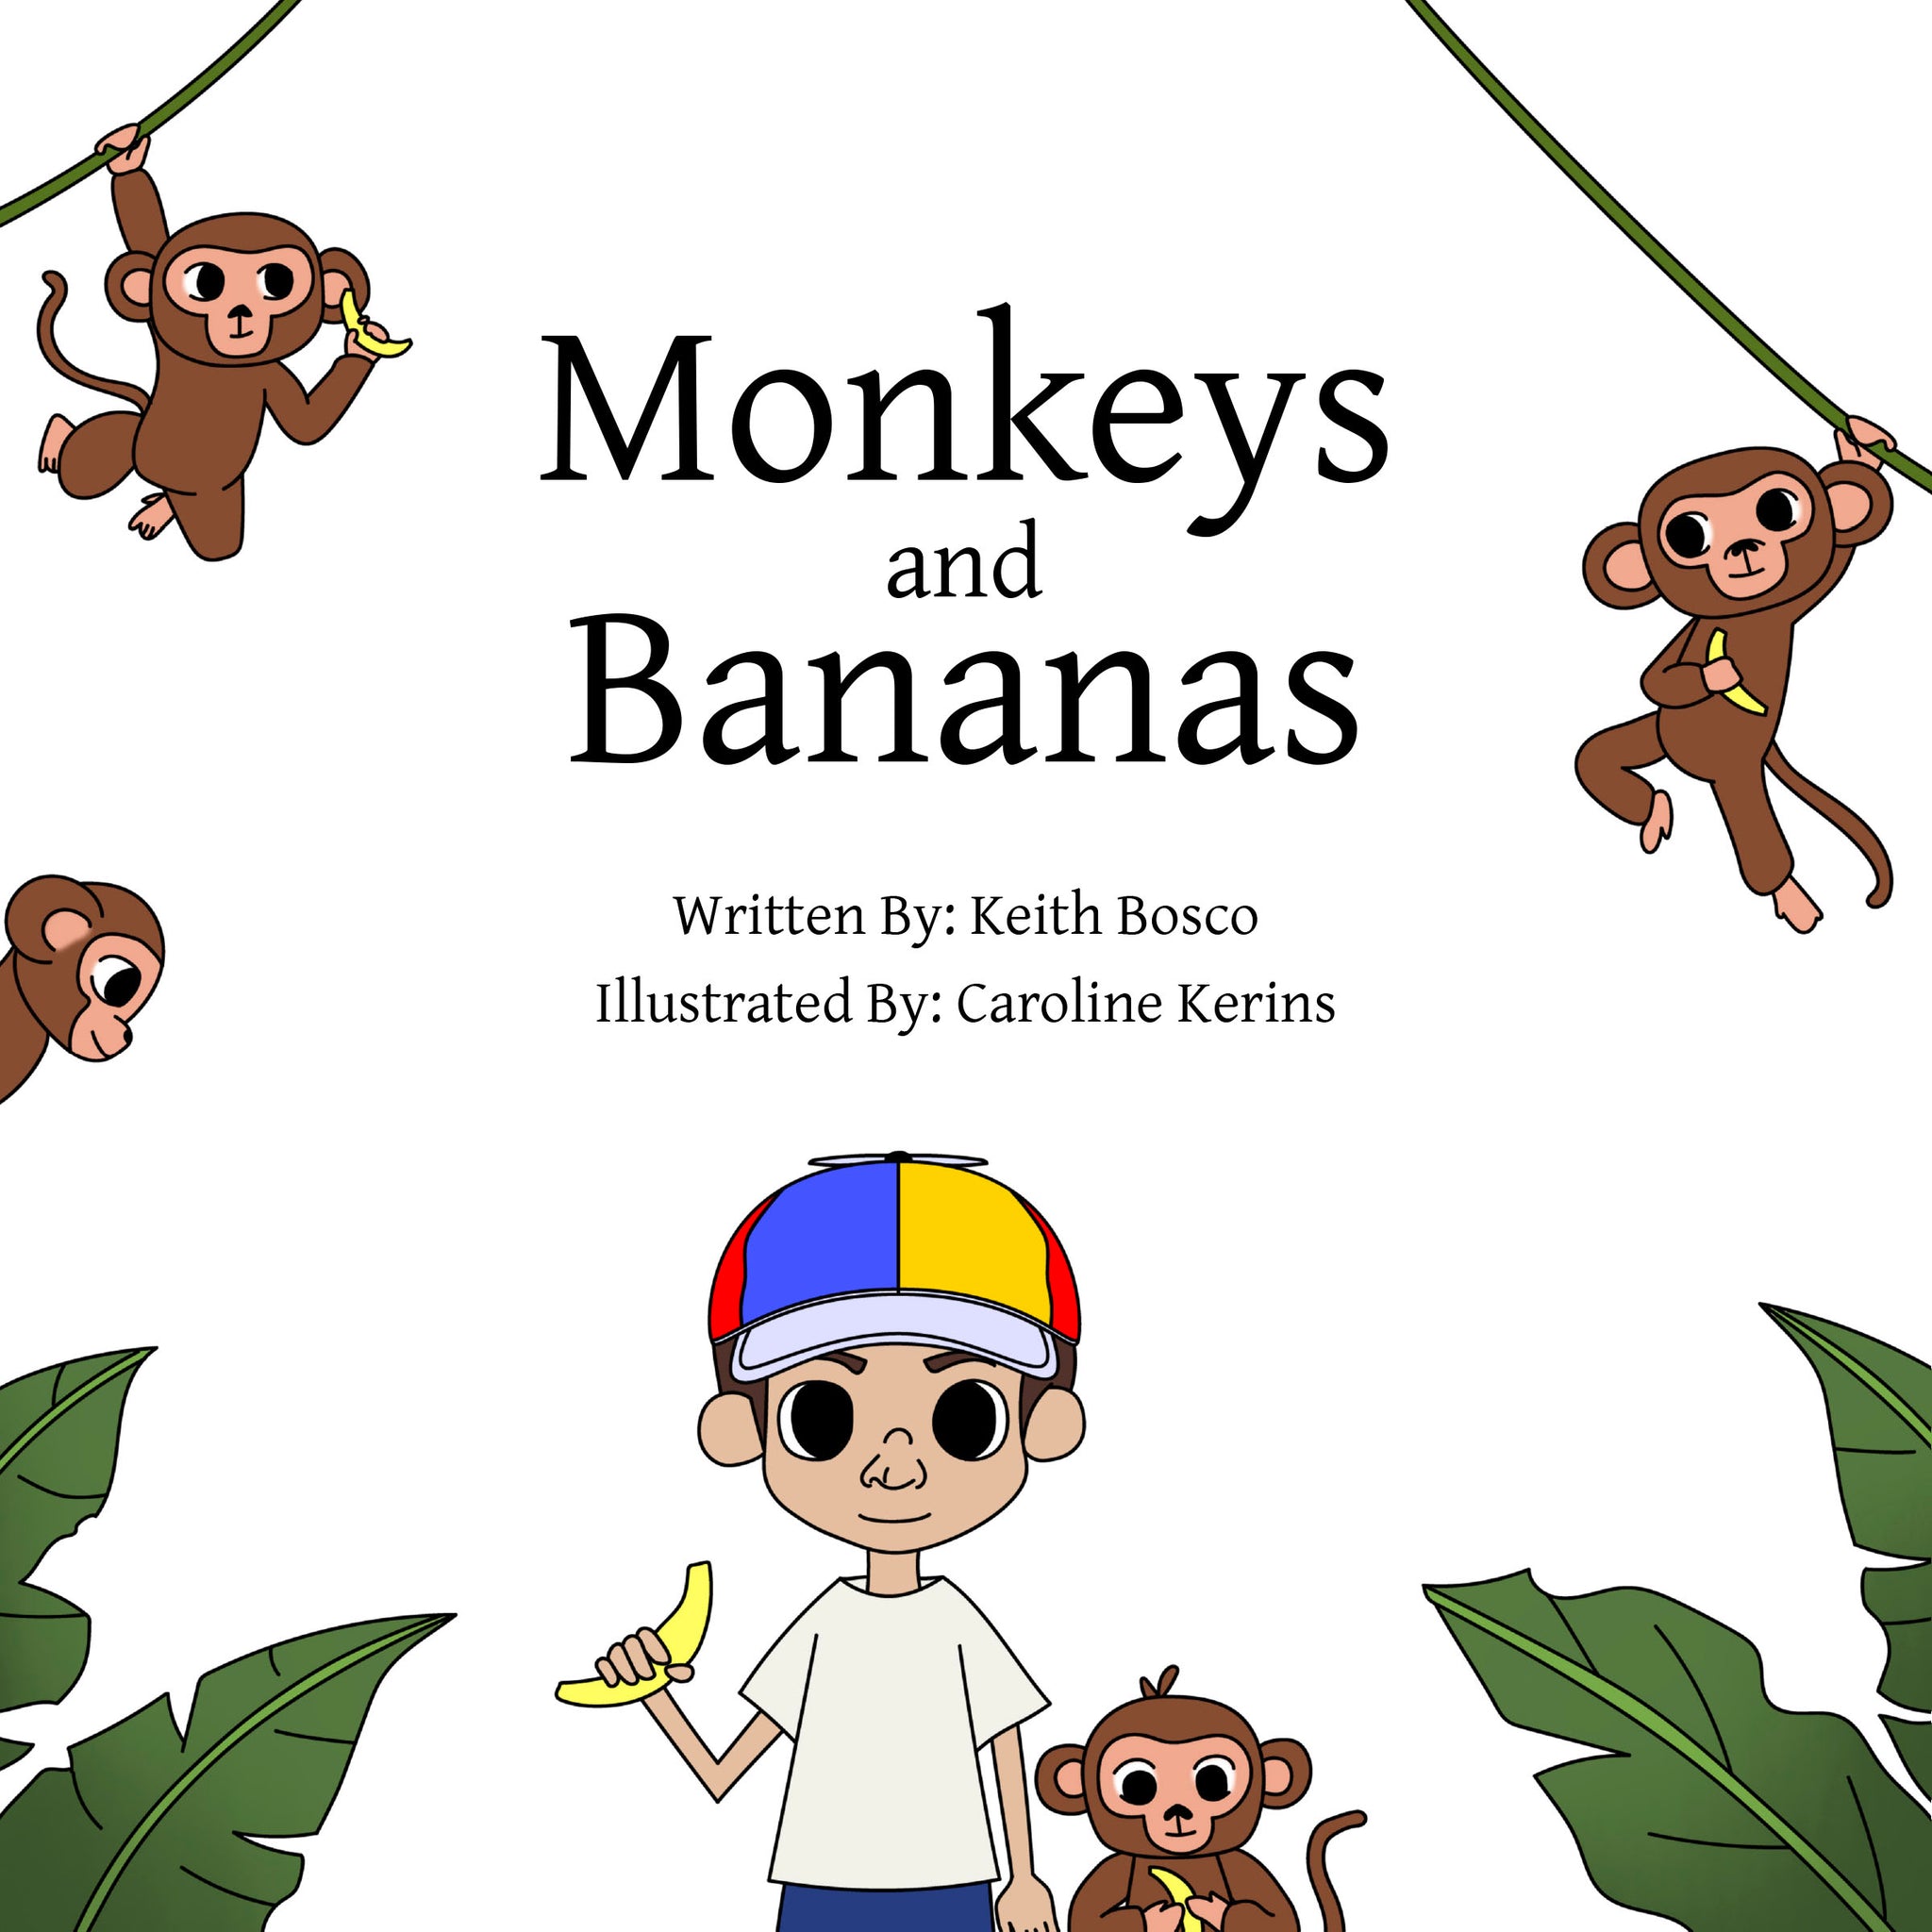 Monkey Mart is bananas!